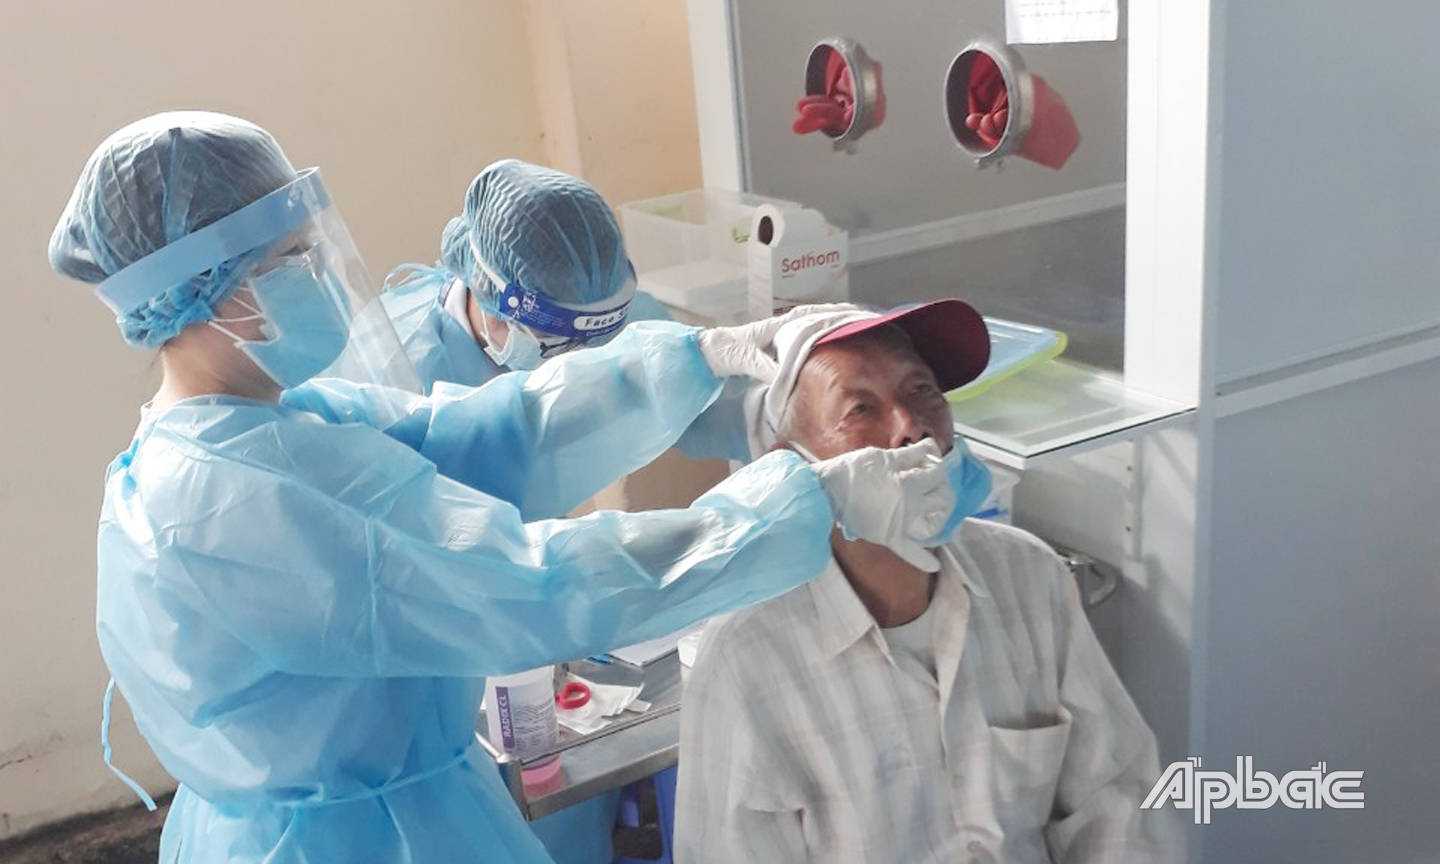 Kế hoạch tầm soát mầm bệnh Covid-19 trong cộng đồng đang được thực hiện tại Tiền Giang